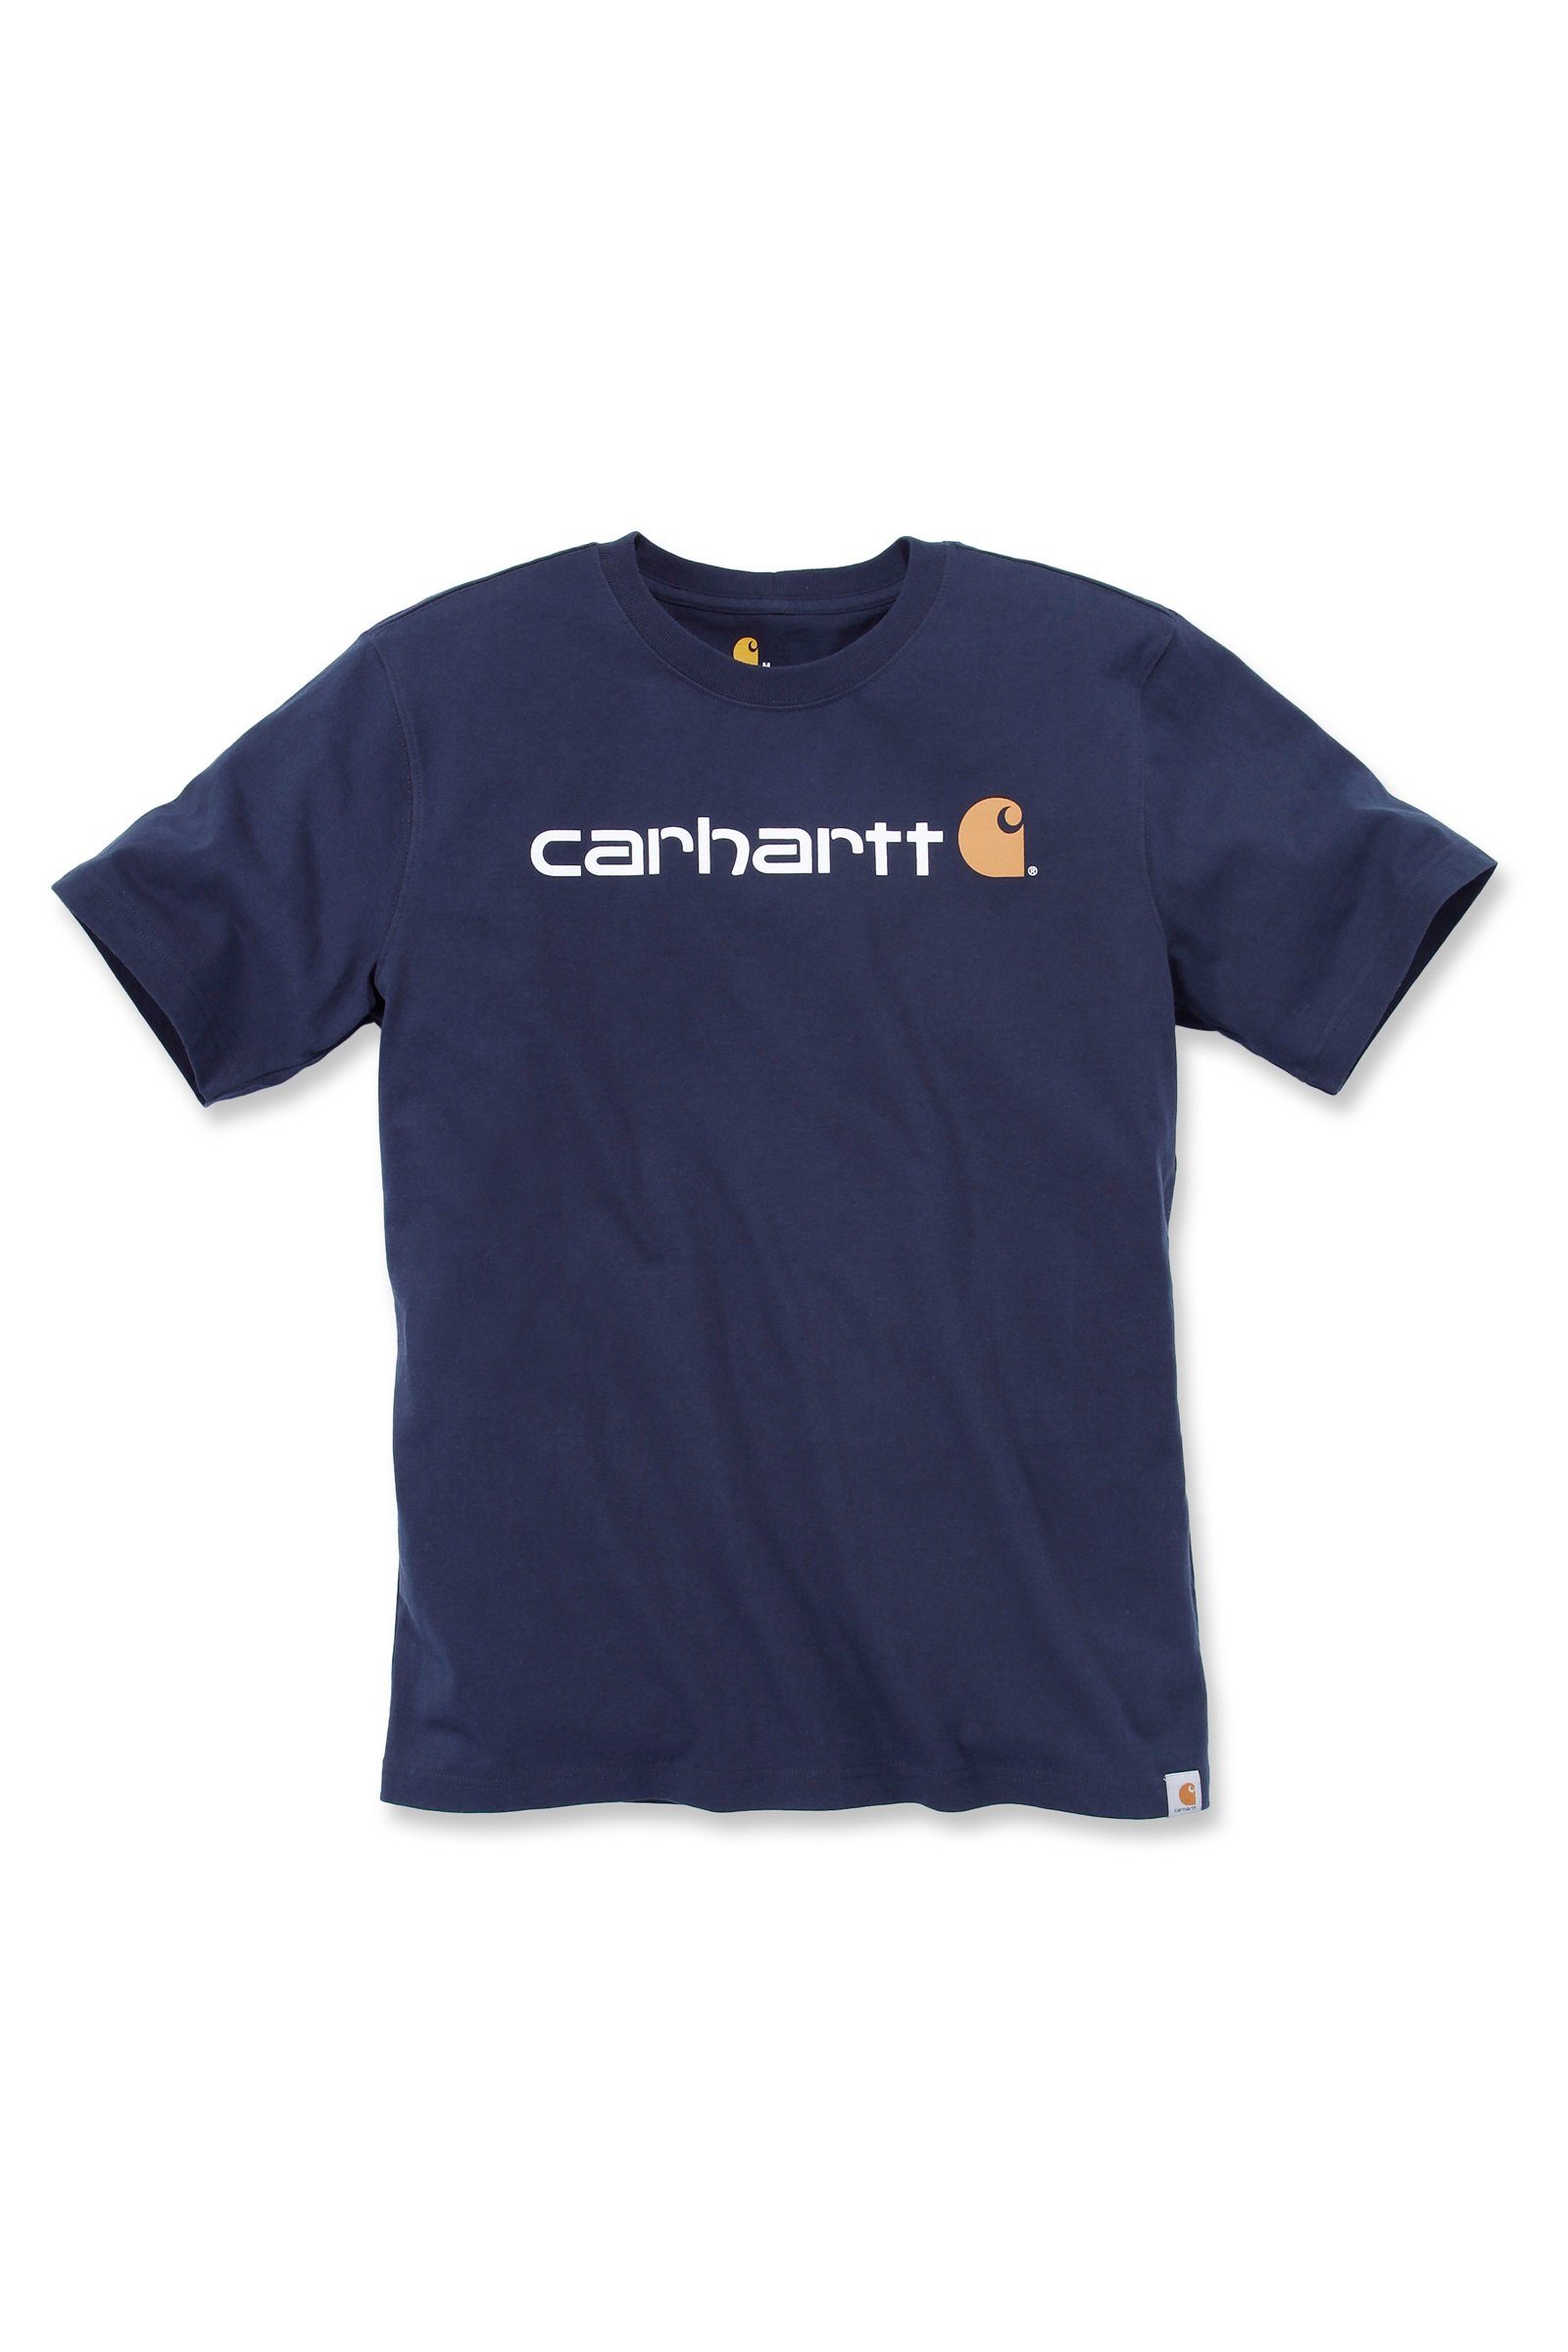 Carhartt T-Shirt Carhartt Herren T-Shirt Relaxed Fit Heavyweight Short-Sleeve Logo Graphic Adult navy